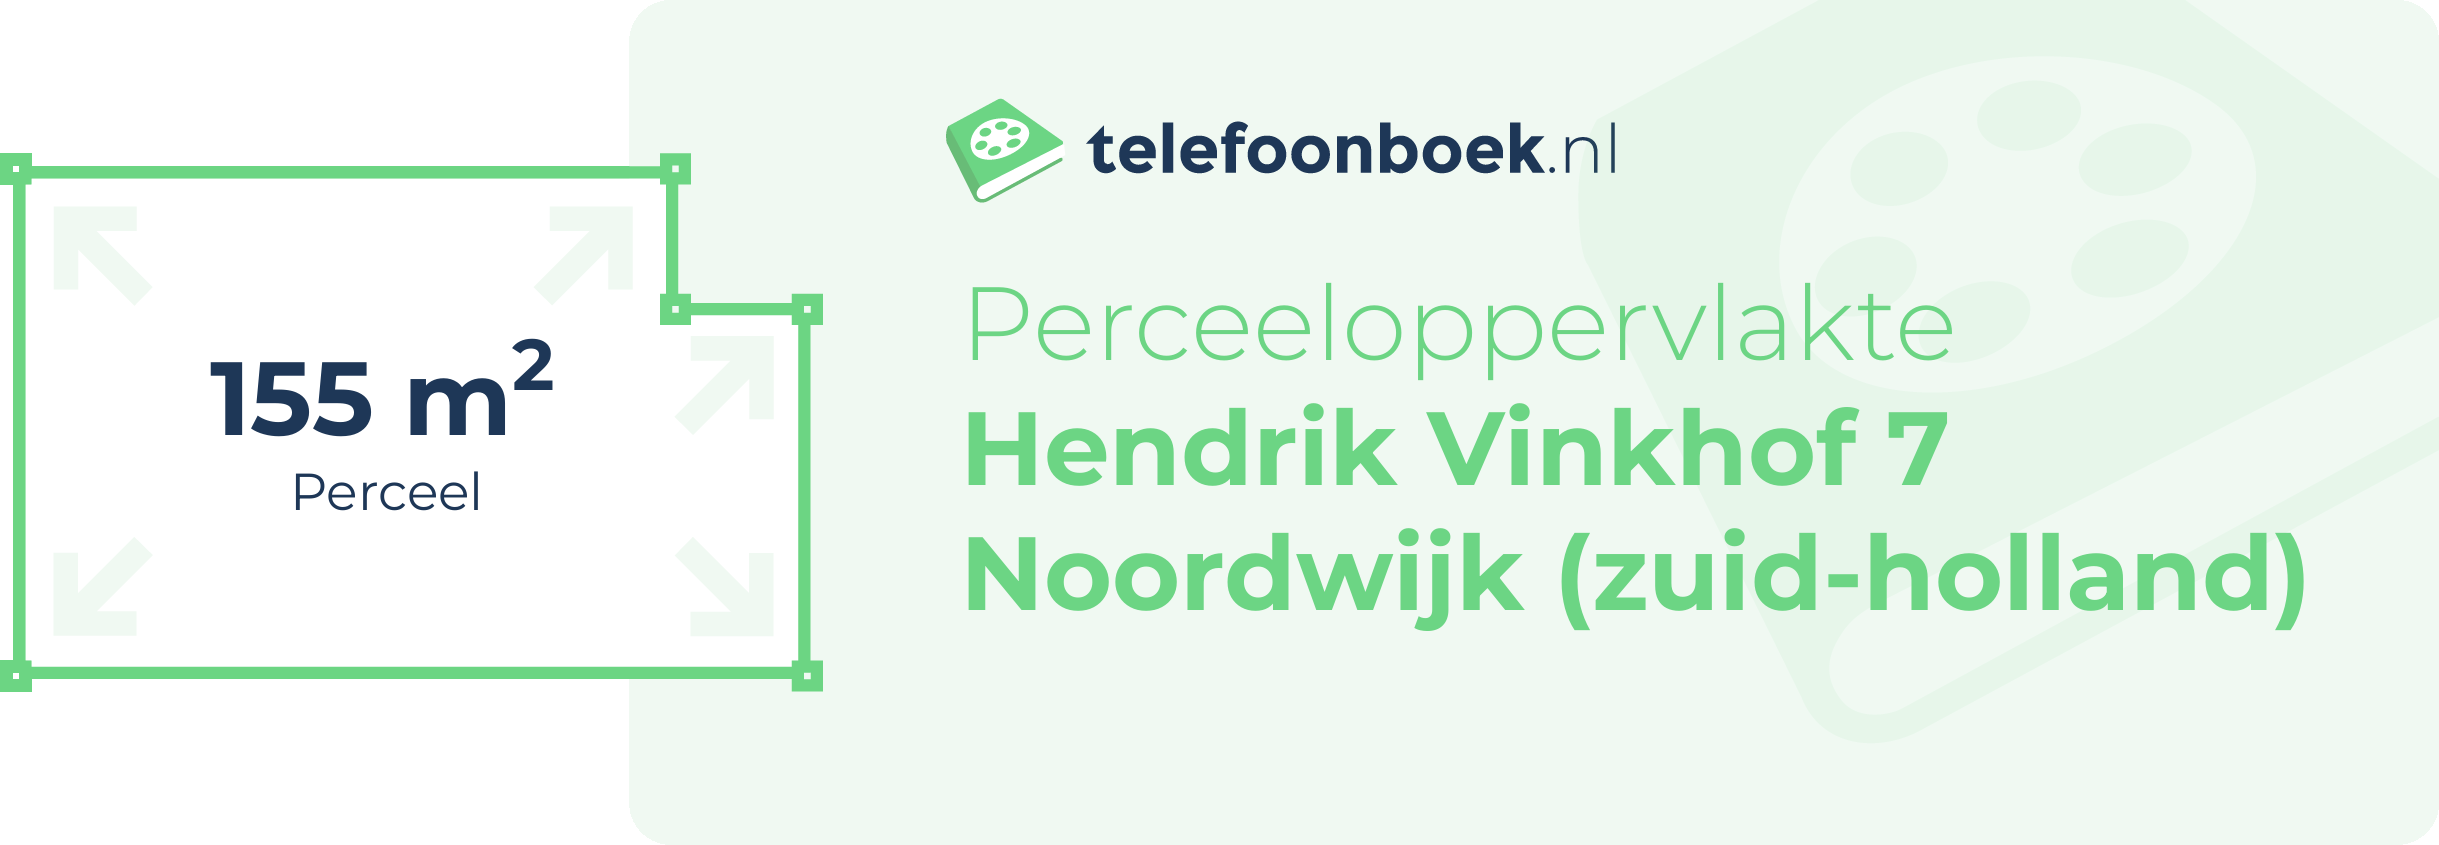 Perceeloppervlakte Hendrik Vinkhof 7 Noordwijk (Zuid-Holland)